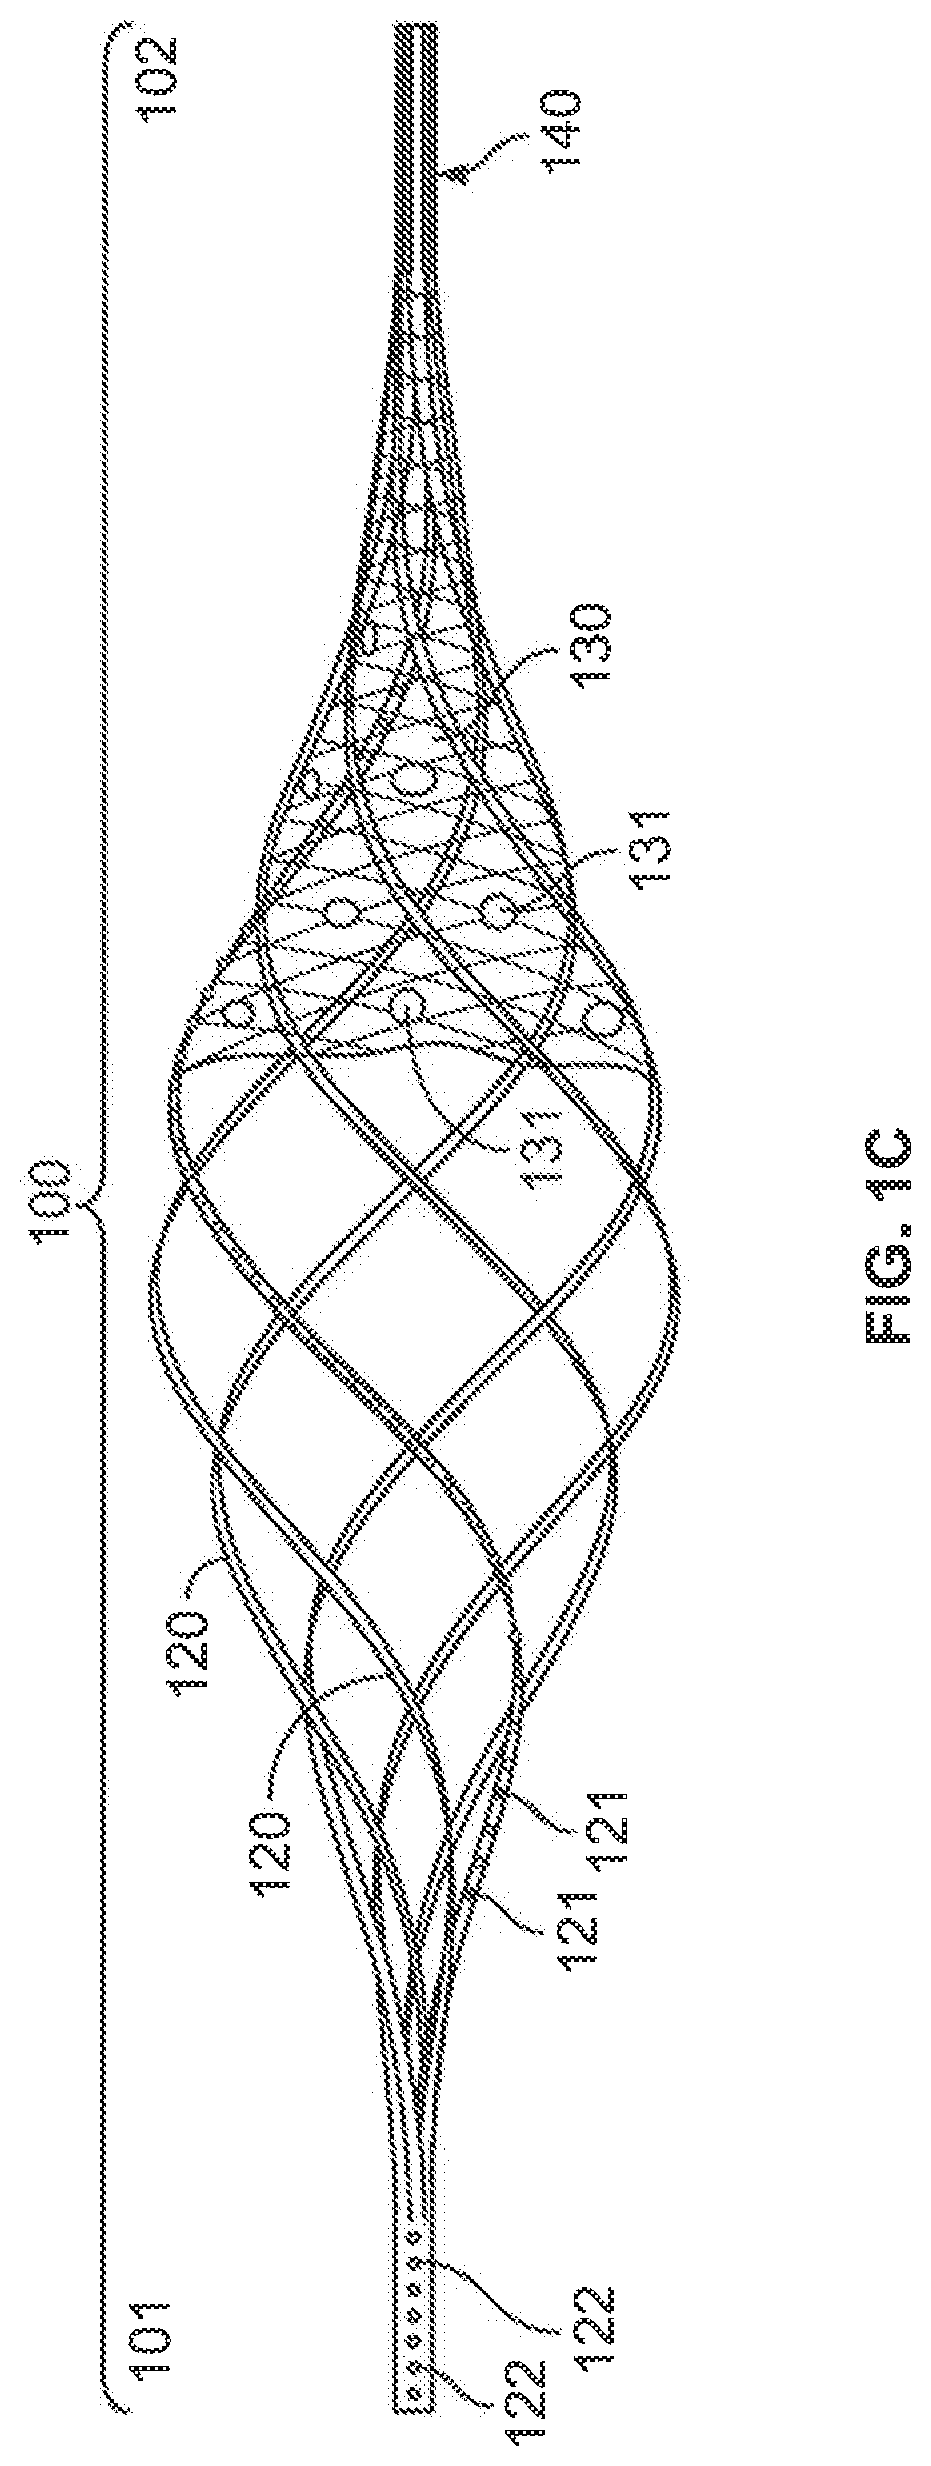 Balloon basket catheter device